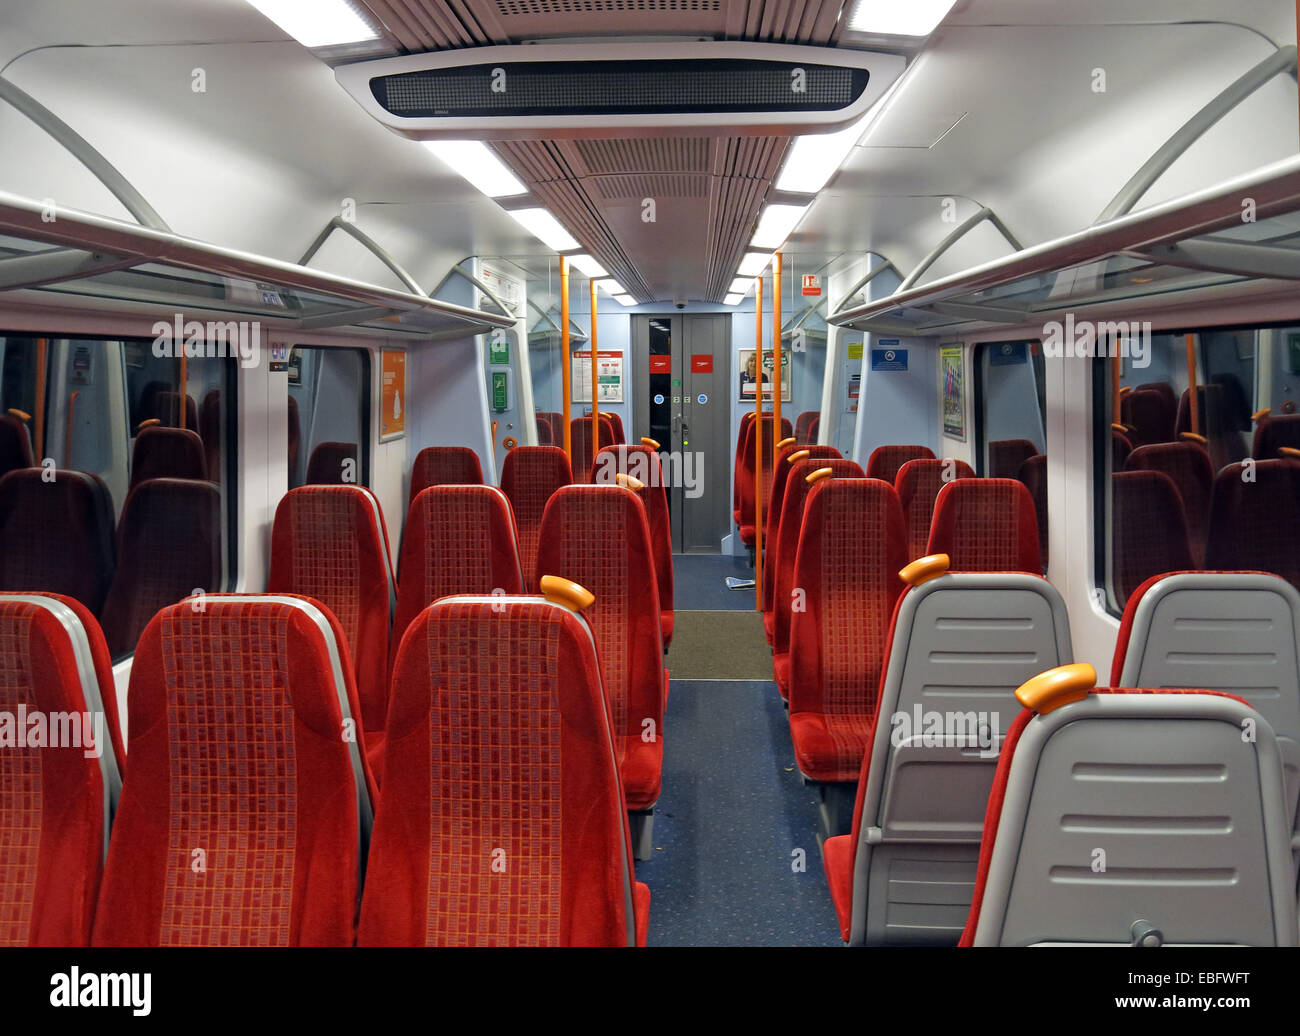 SW vide livrée rouge Trains Transport, Jc Clapham, Londres, Angleterre, Royaume-Uni Banque D'Images